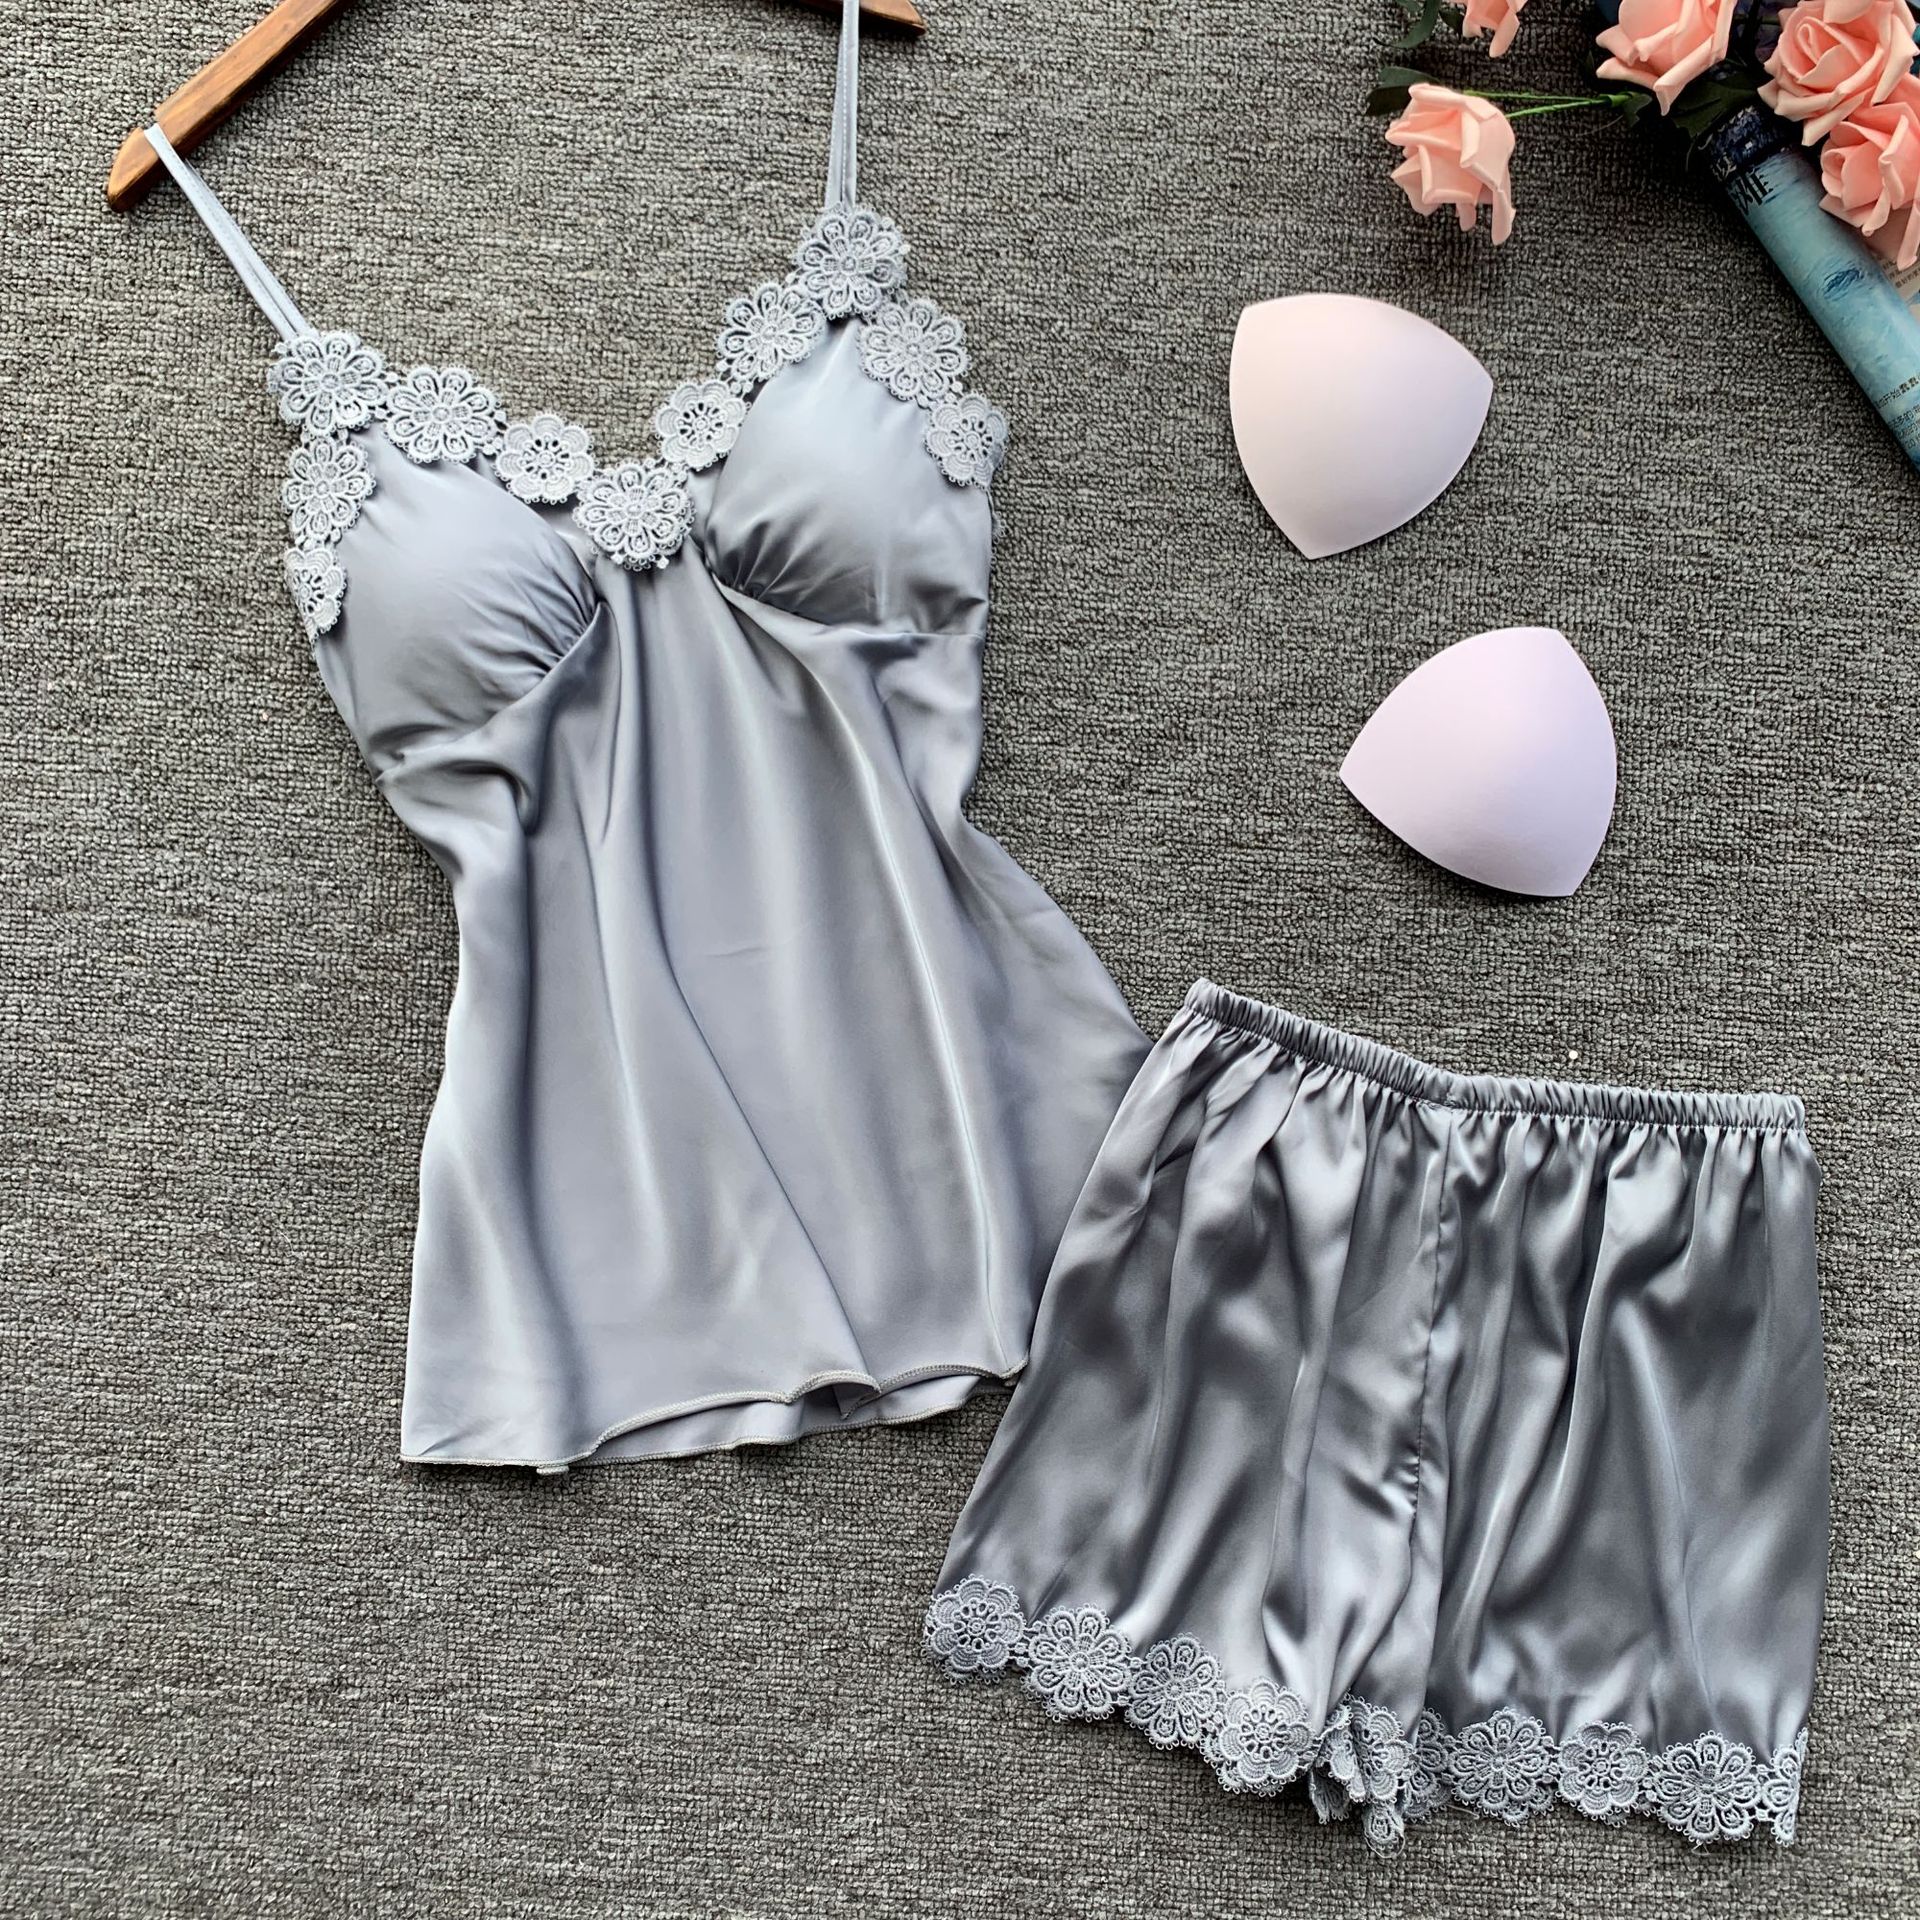 Lace Wedding Sleepwear Lingerie Set for Women